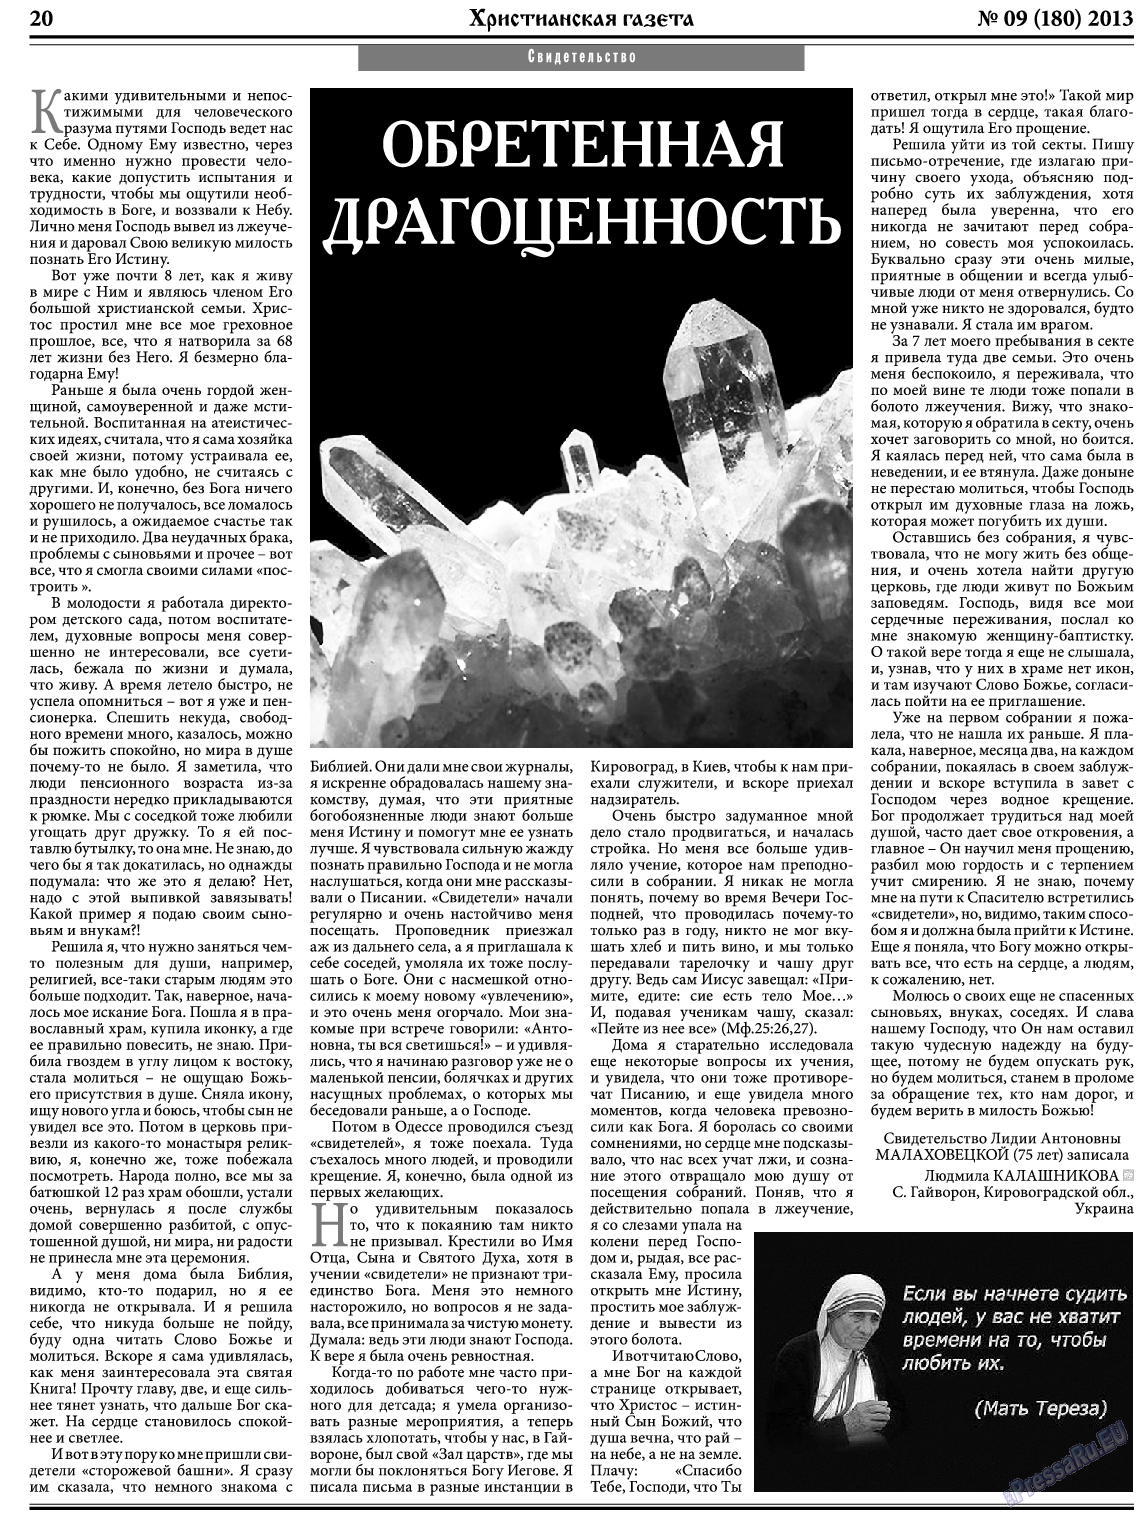 Христианская газета, газета. 2013 №9 стр.28